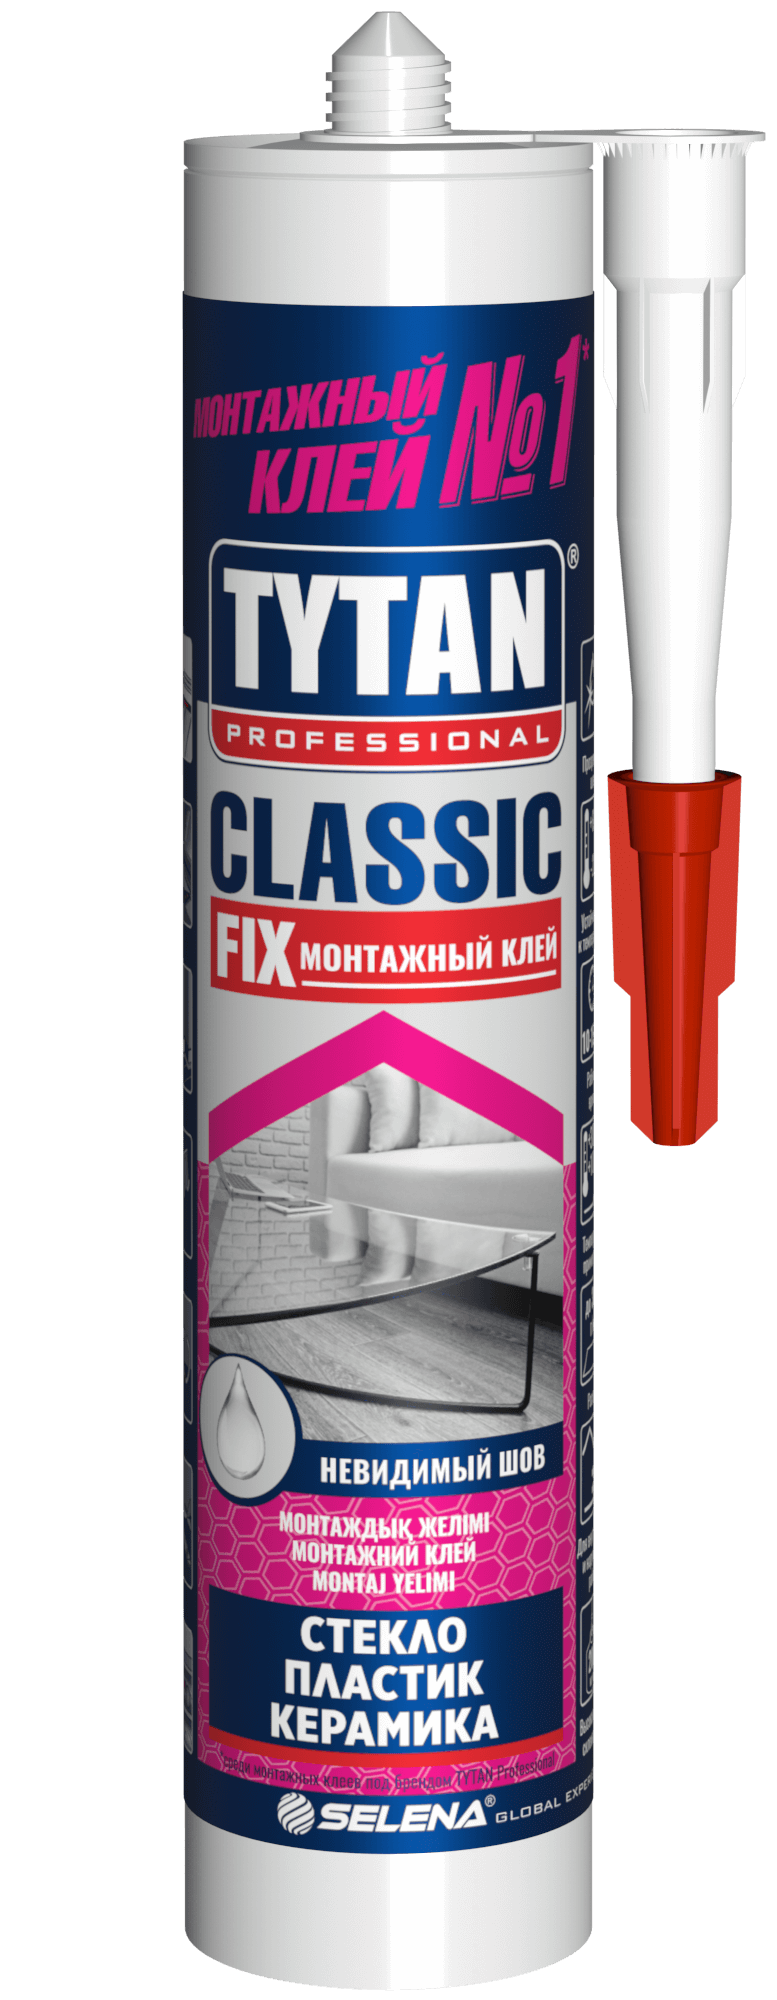 Монтажный клей Tytan Pro Classic Fix, 310мл, 2 шт